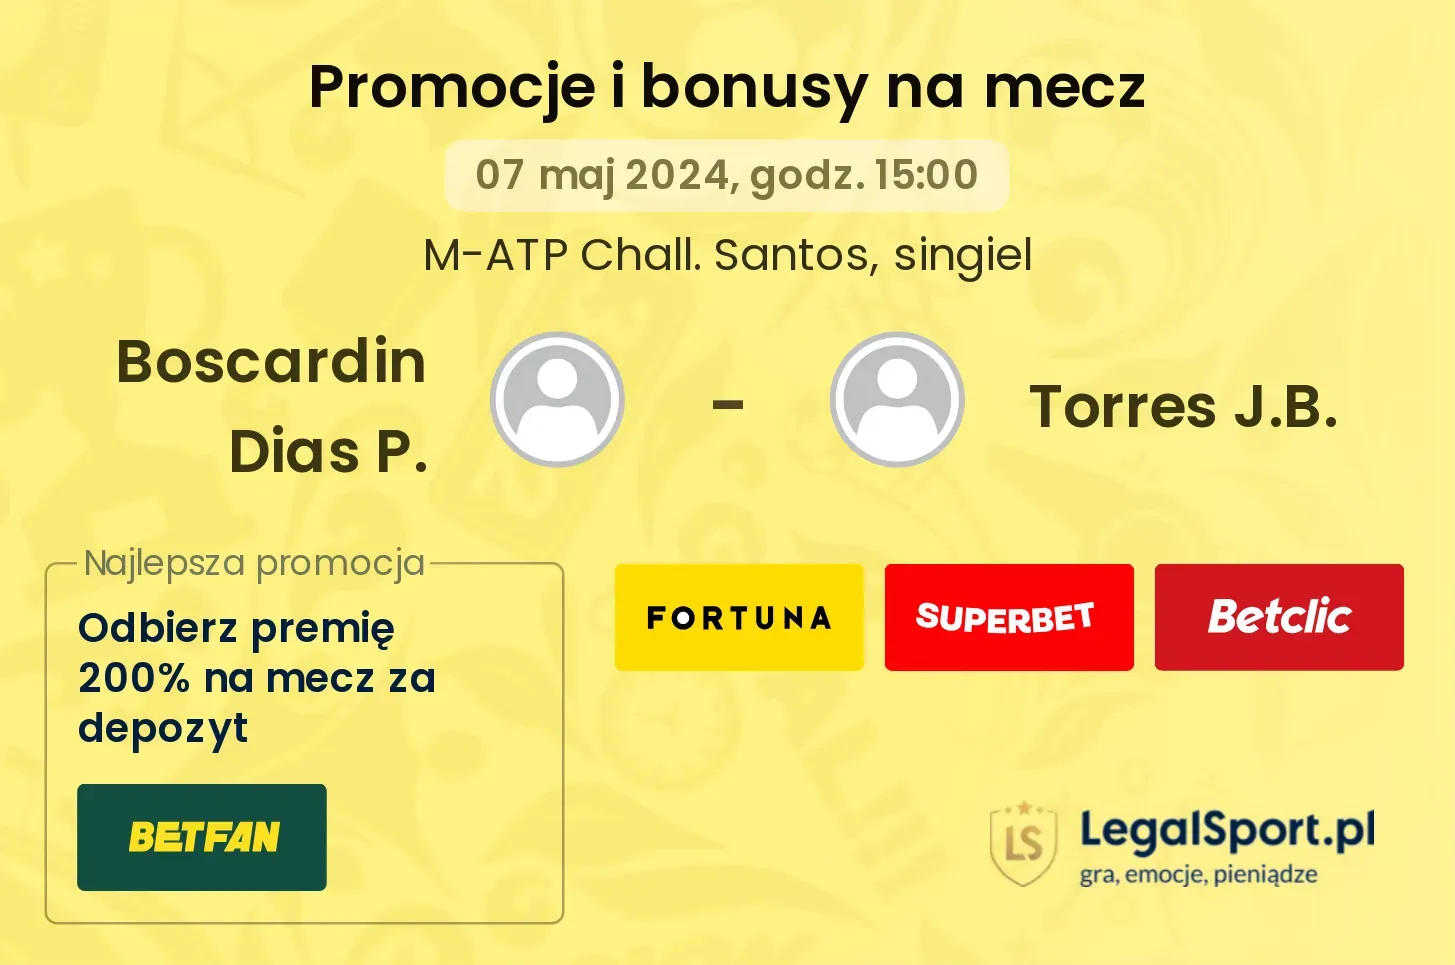 Boscardin Dias P. - Torres J.B. promocje bonusy na mecz